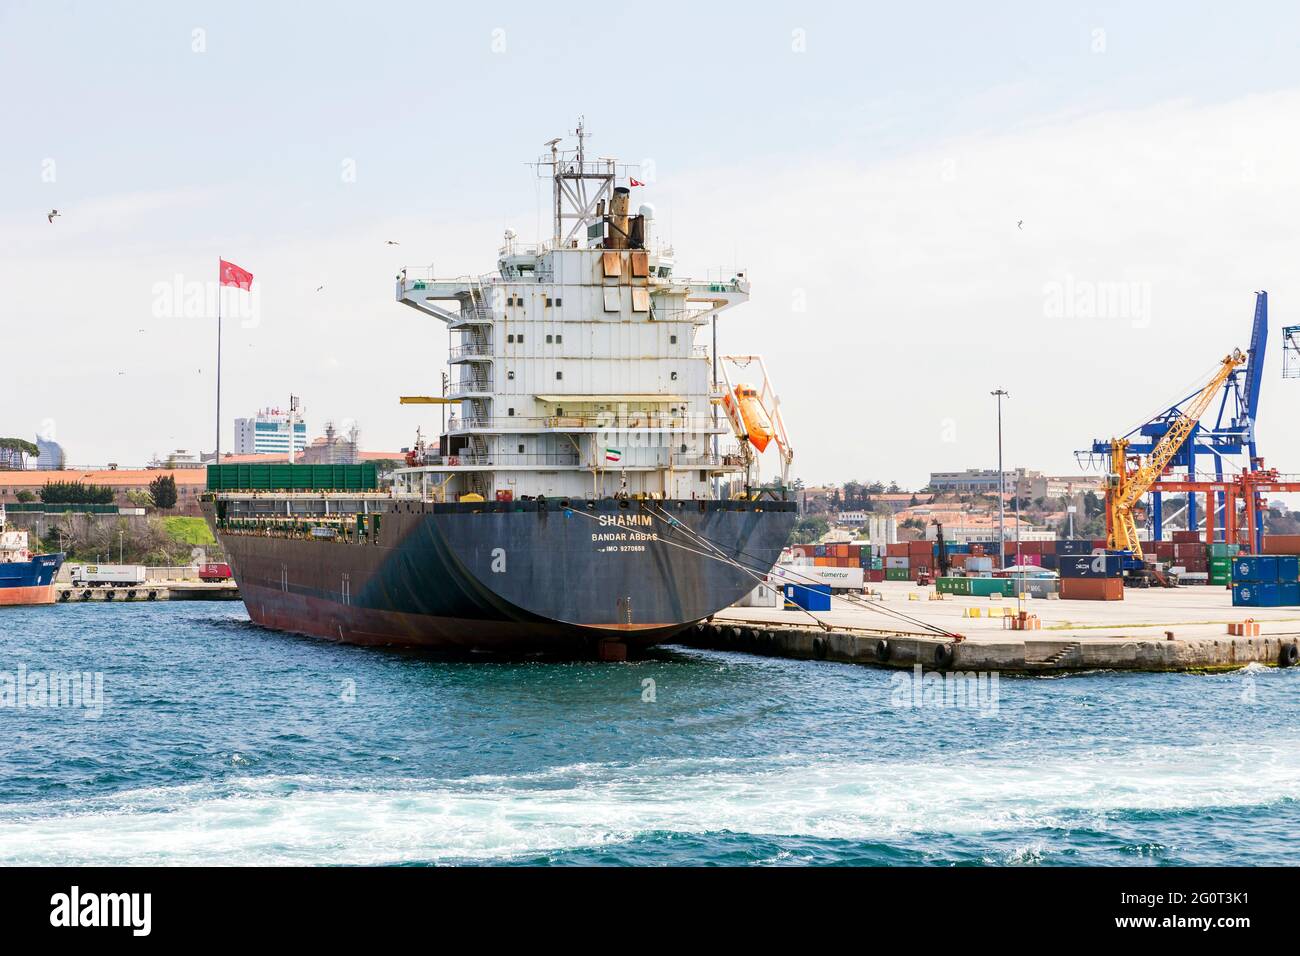 Haydarpasa, Estambul, Turquía 15th de abril de 2021: Buque portacontenedores iraní Shamim, construido en Alemania, amarrado en el puerto de Haydarpasa, Estambul. Foto de stock